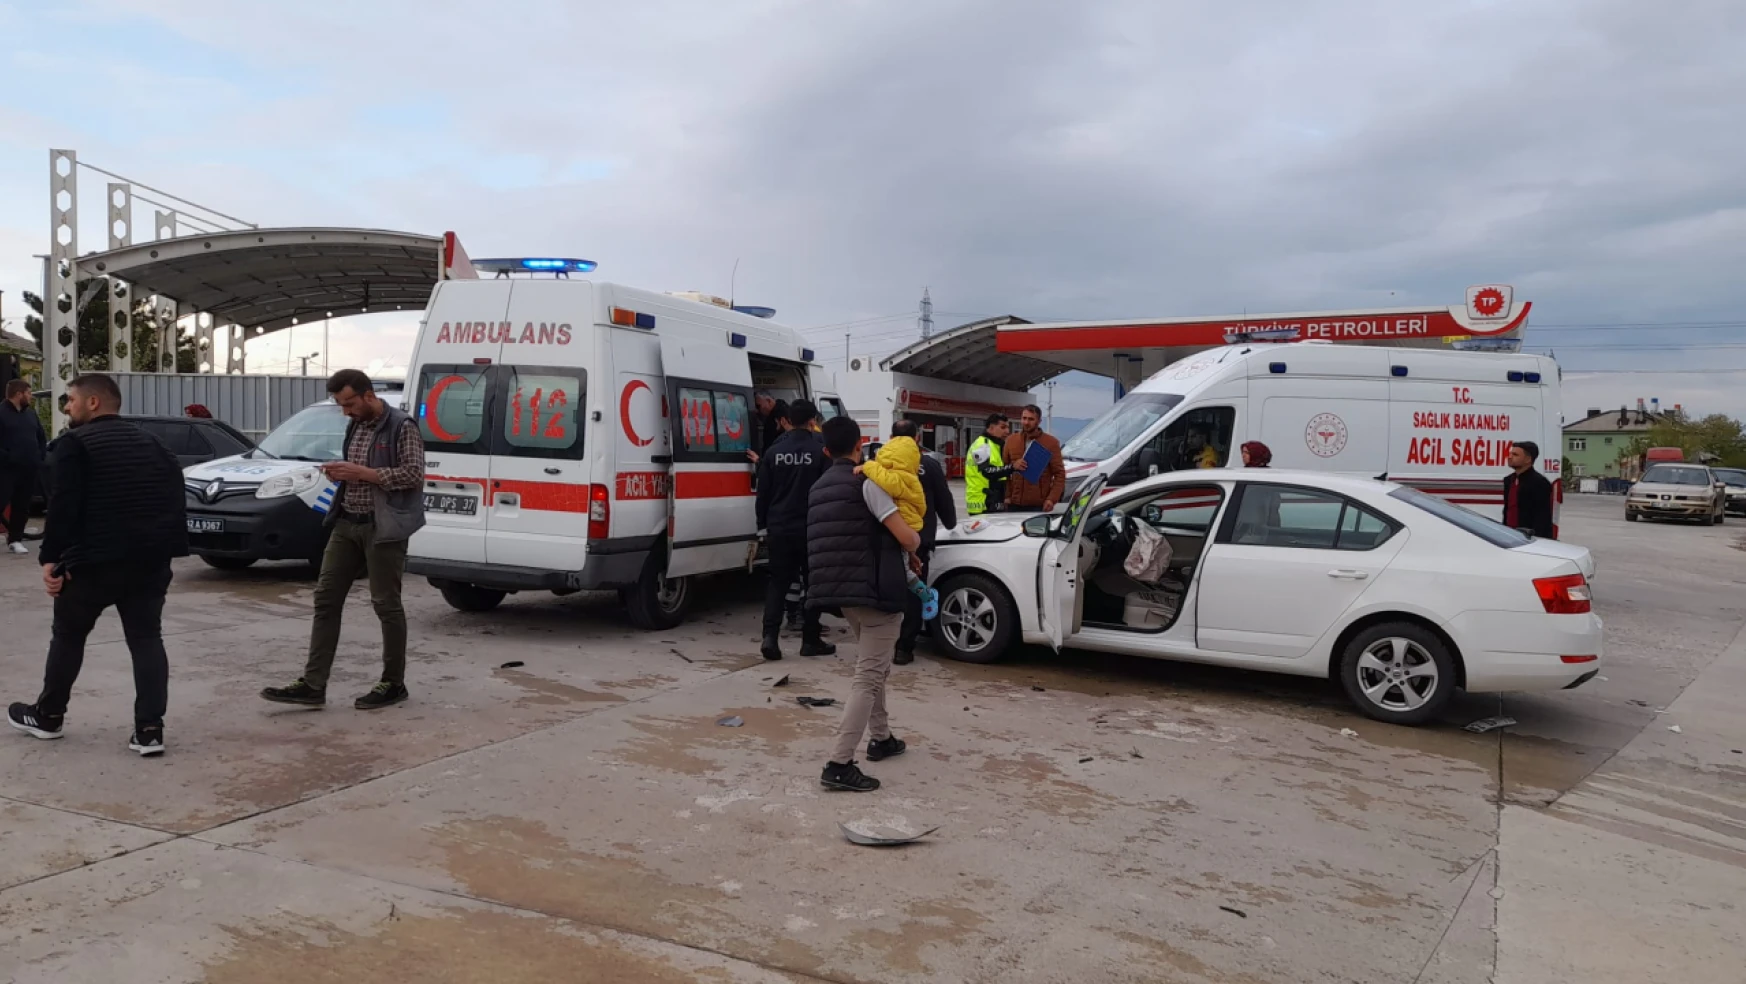 Konya'da iki otomobilin çarpışması sonucu 5 kişi yaralandı